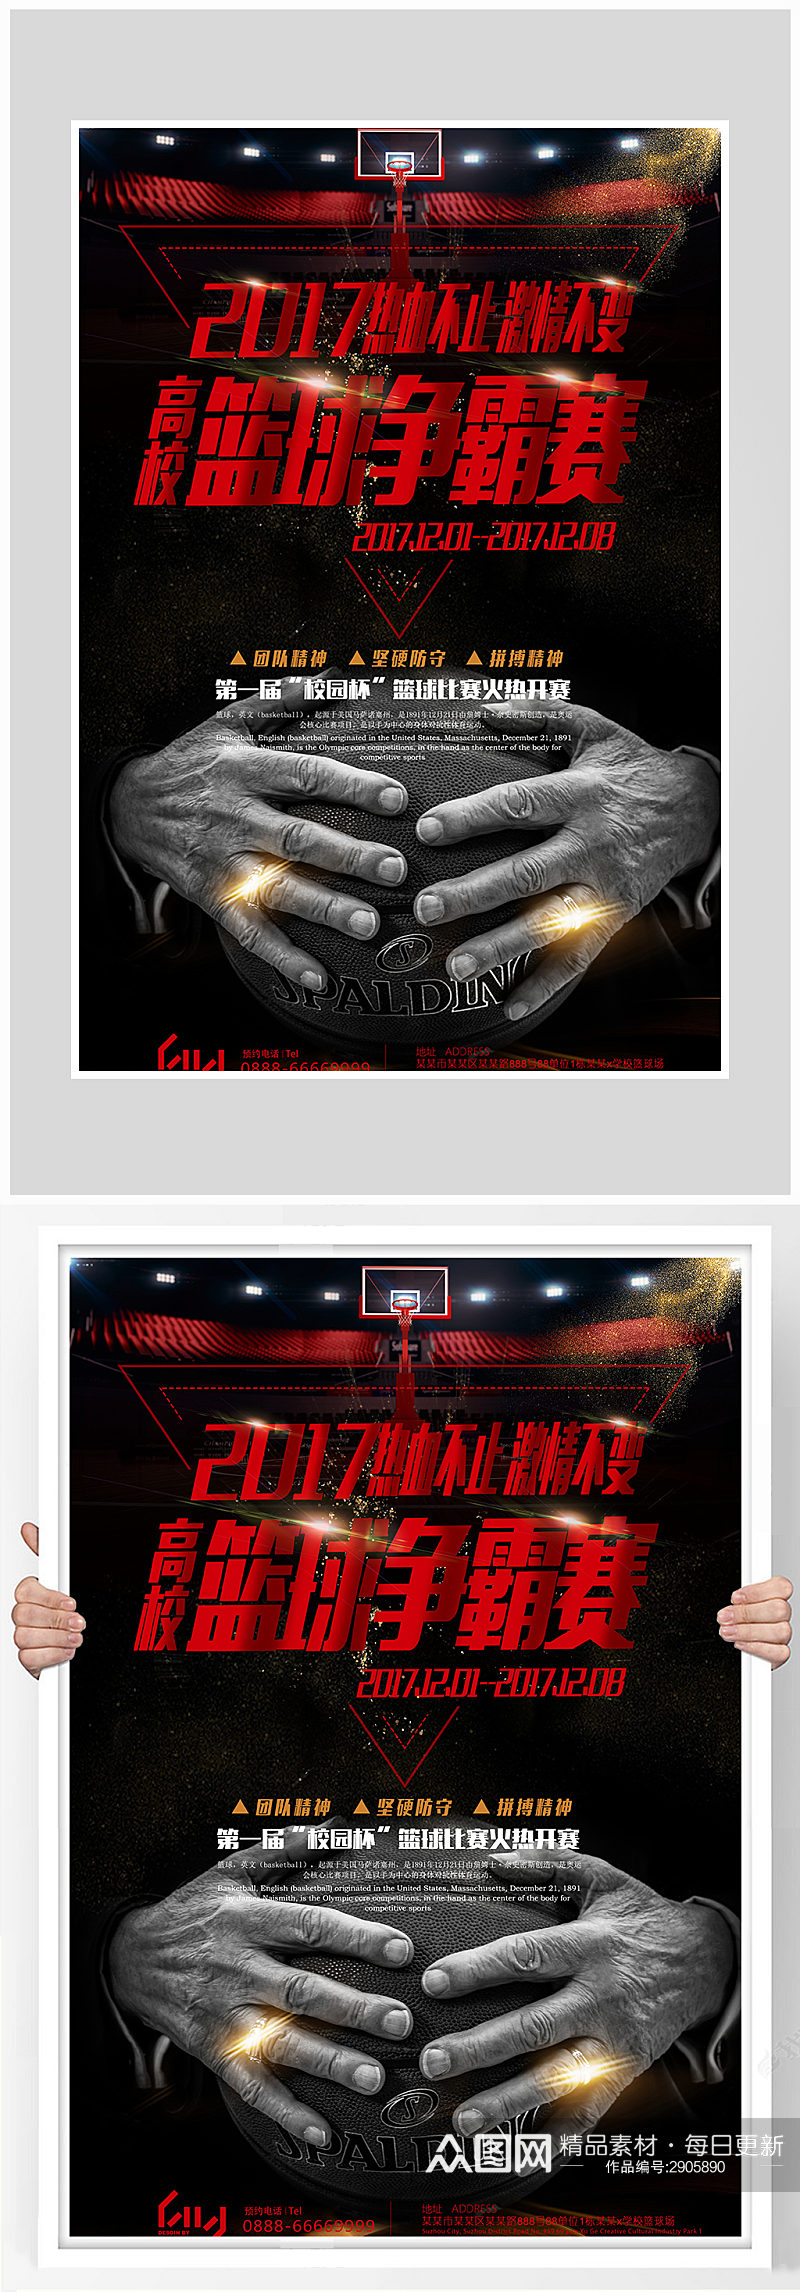 创意黑色质感篮球争霸赛海报设计素材